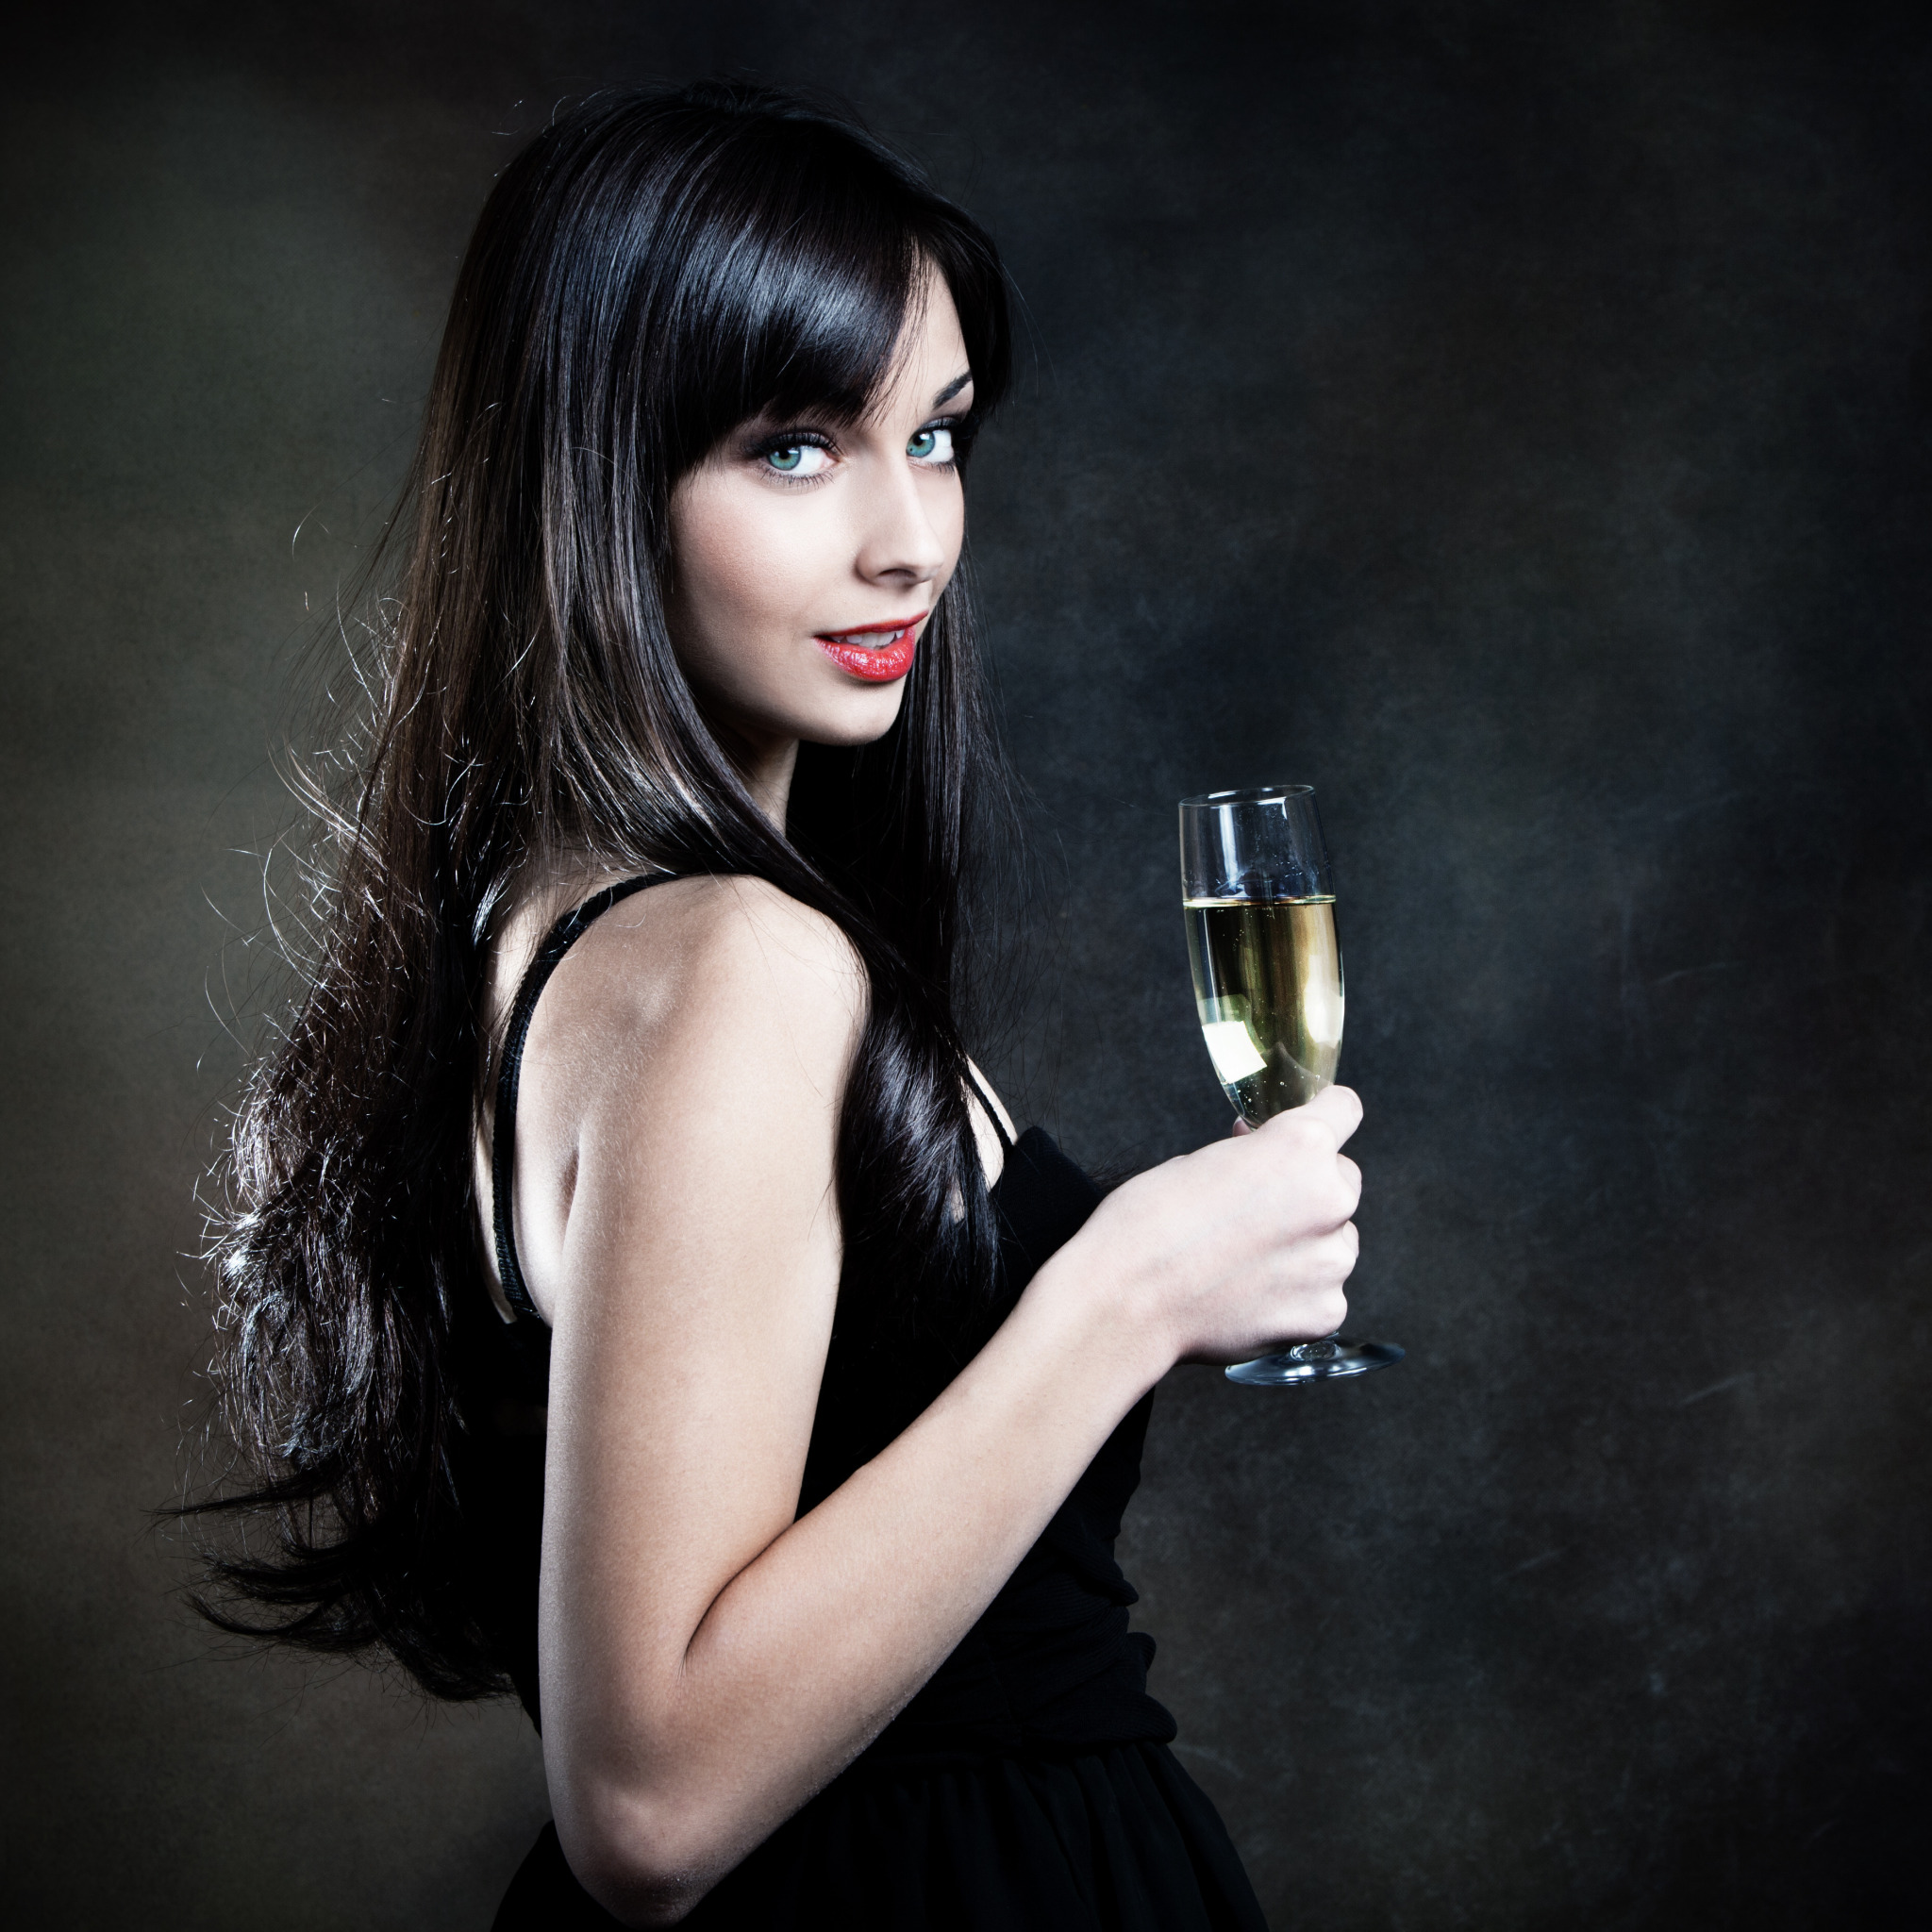 Девушка пьет шампанское. Девушка с шампанским. Женщина с бокалом в руке. Красивые девушки с бокалом в руке. Женщина с бокалом шампанского.